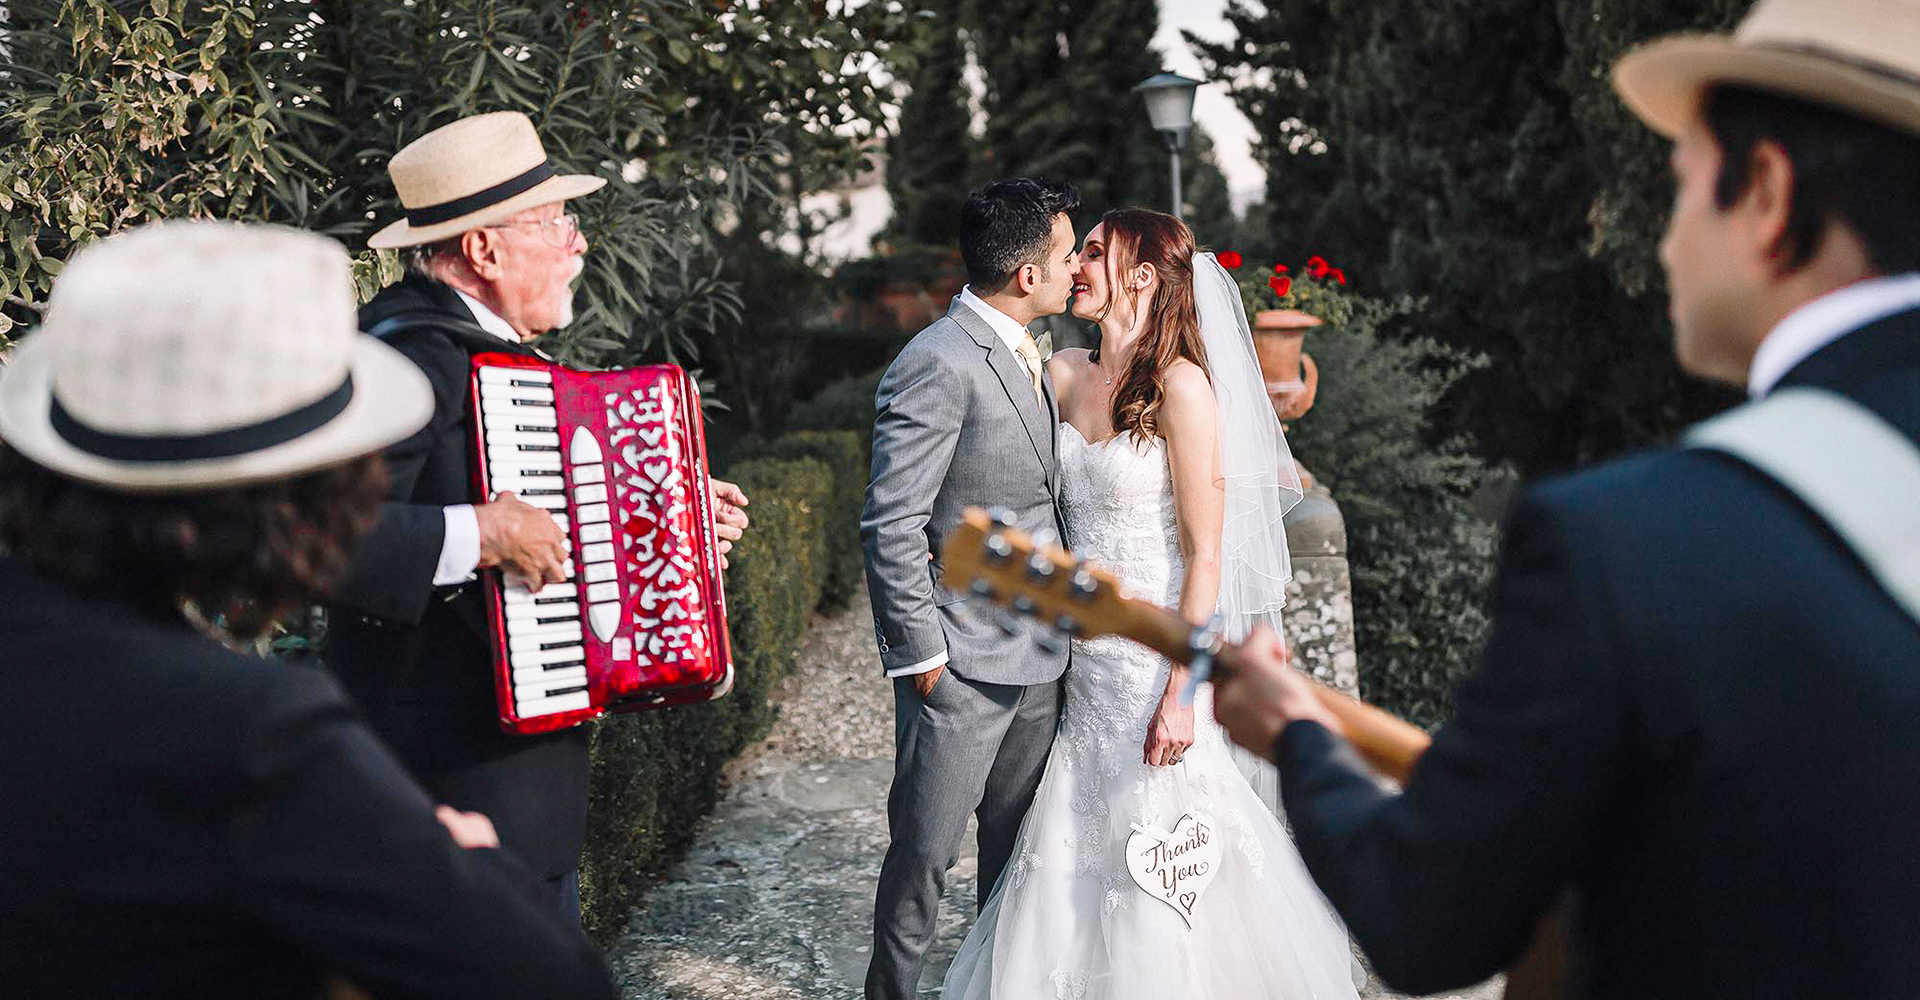 Folk Trio for a wedding in a tuscan castle